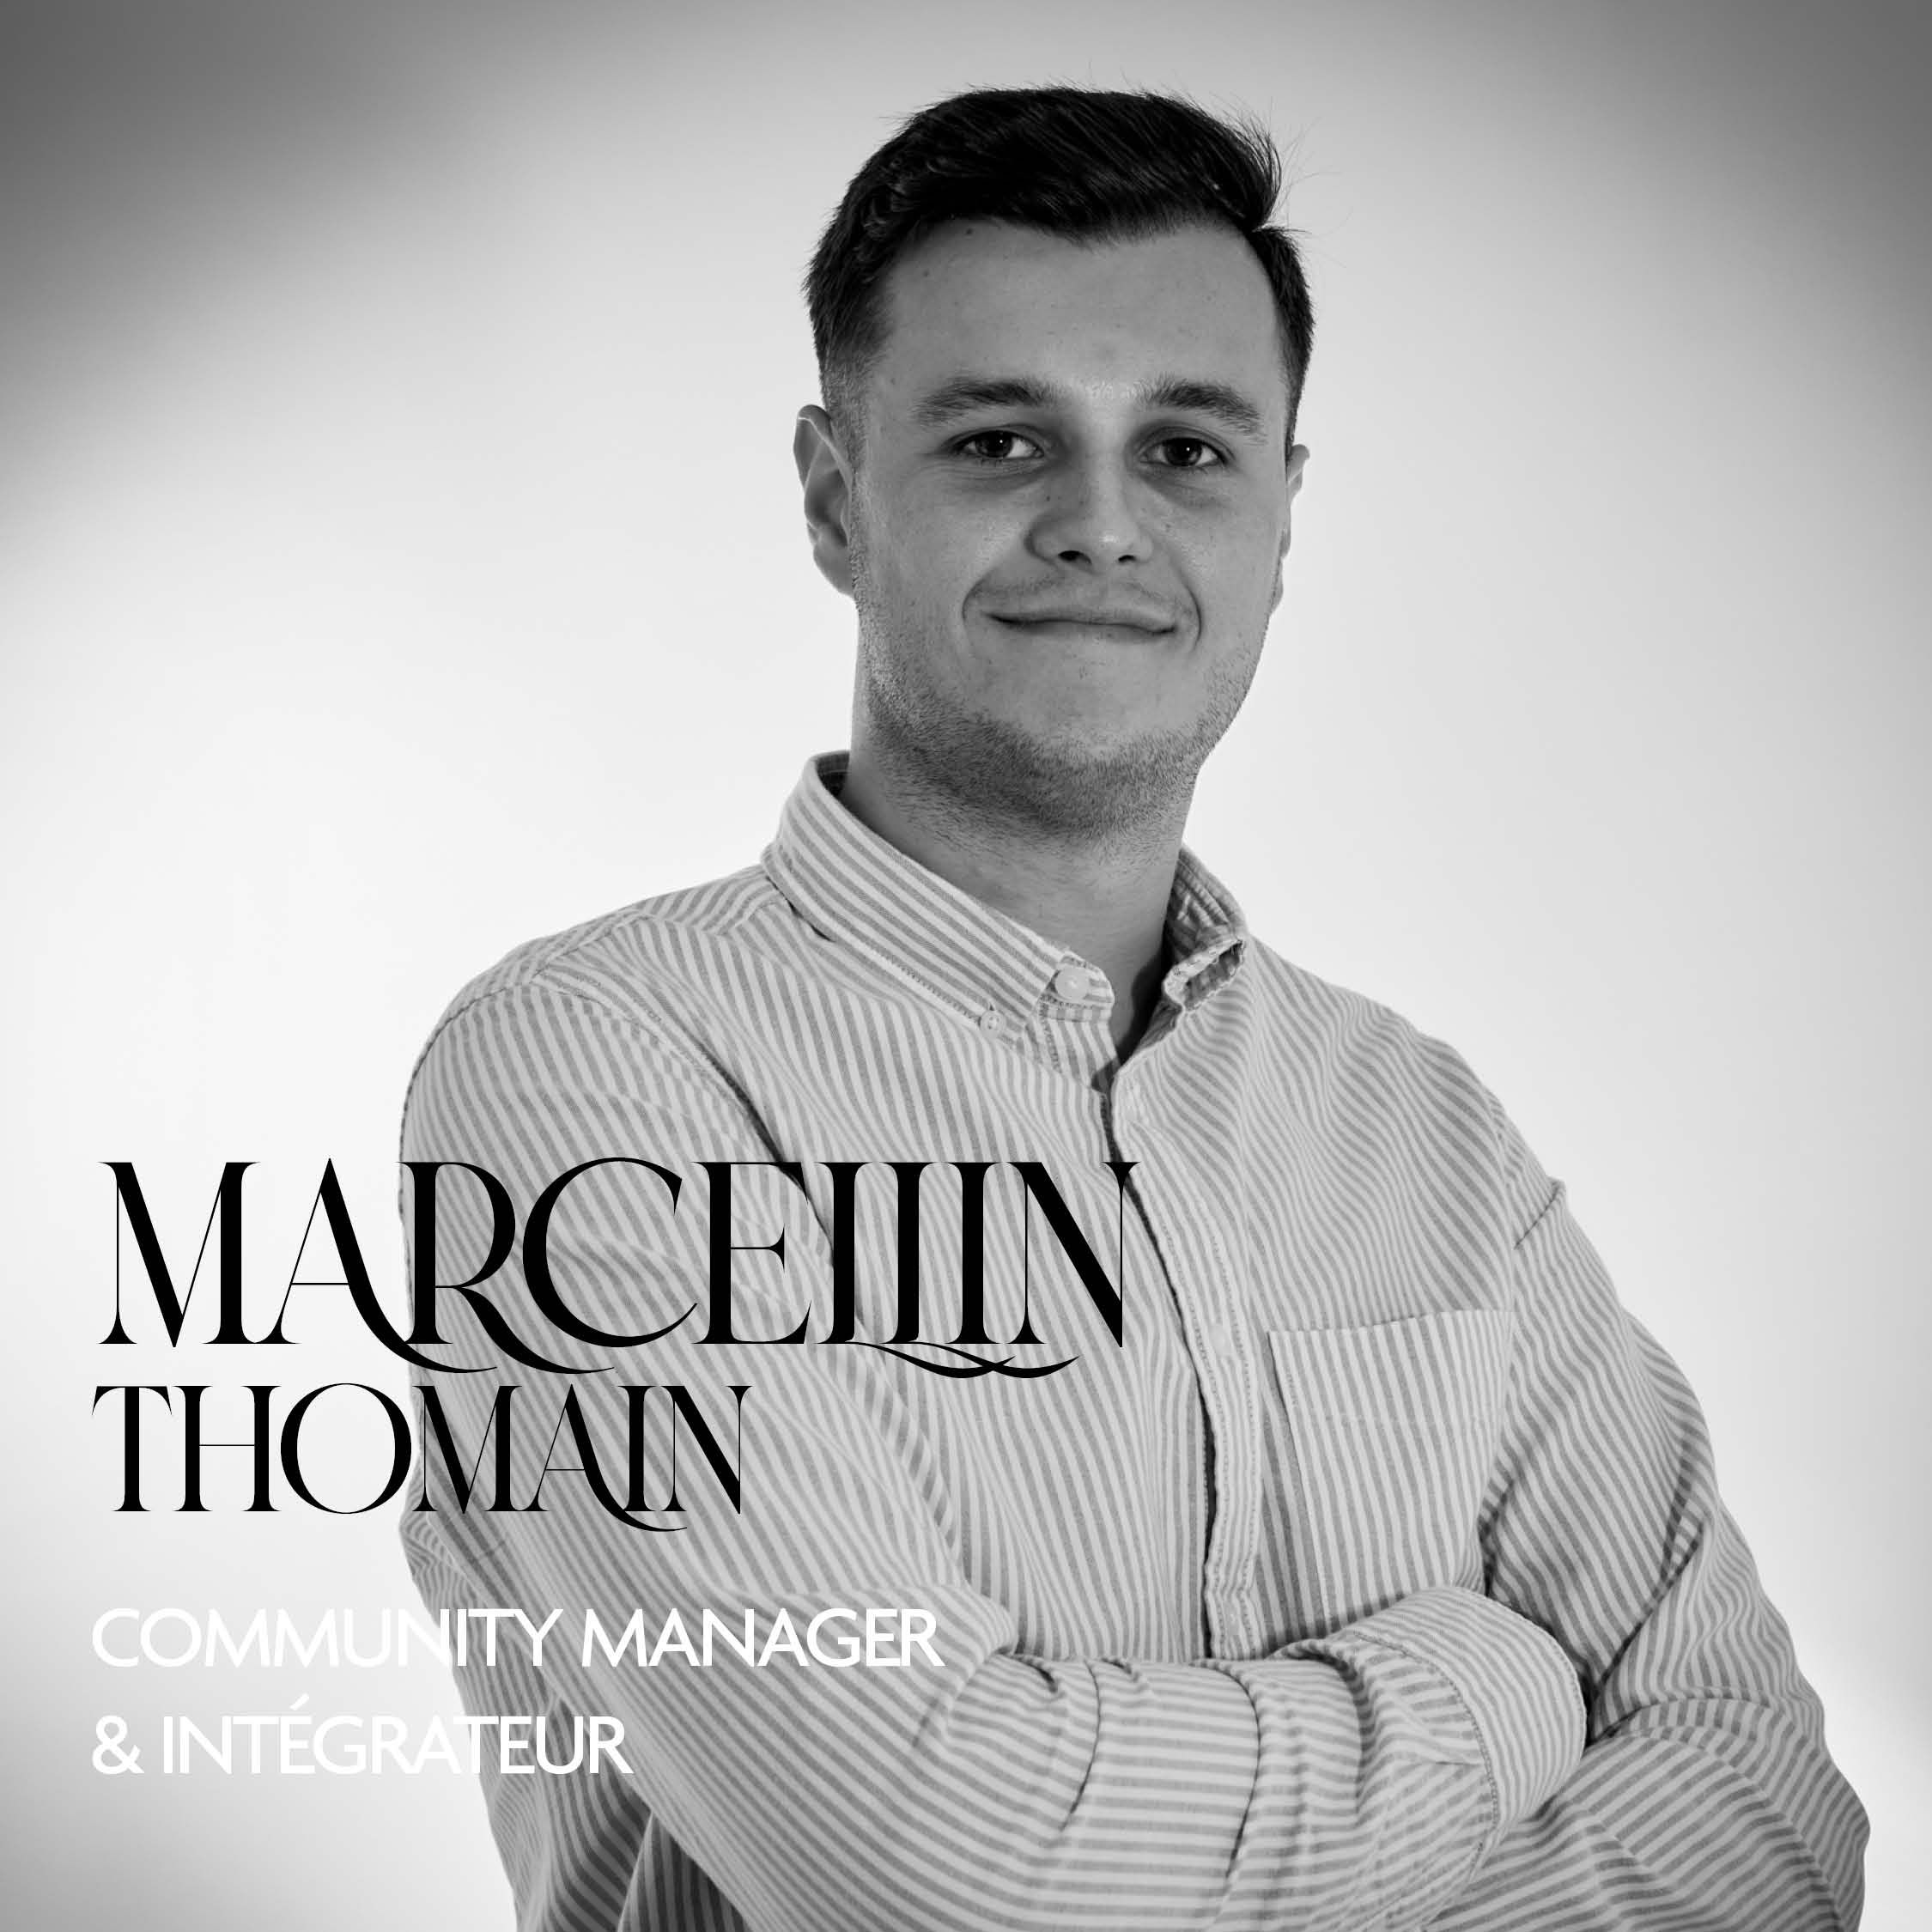 Marcellin Thomain Community Manager et integrateur